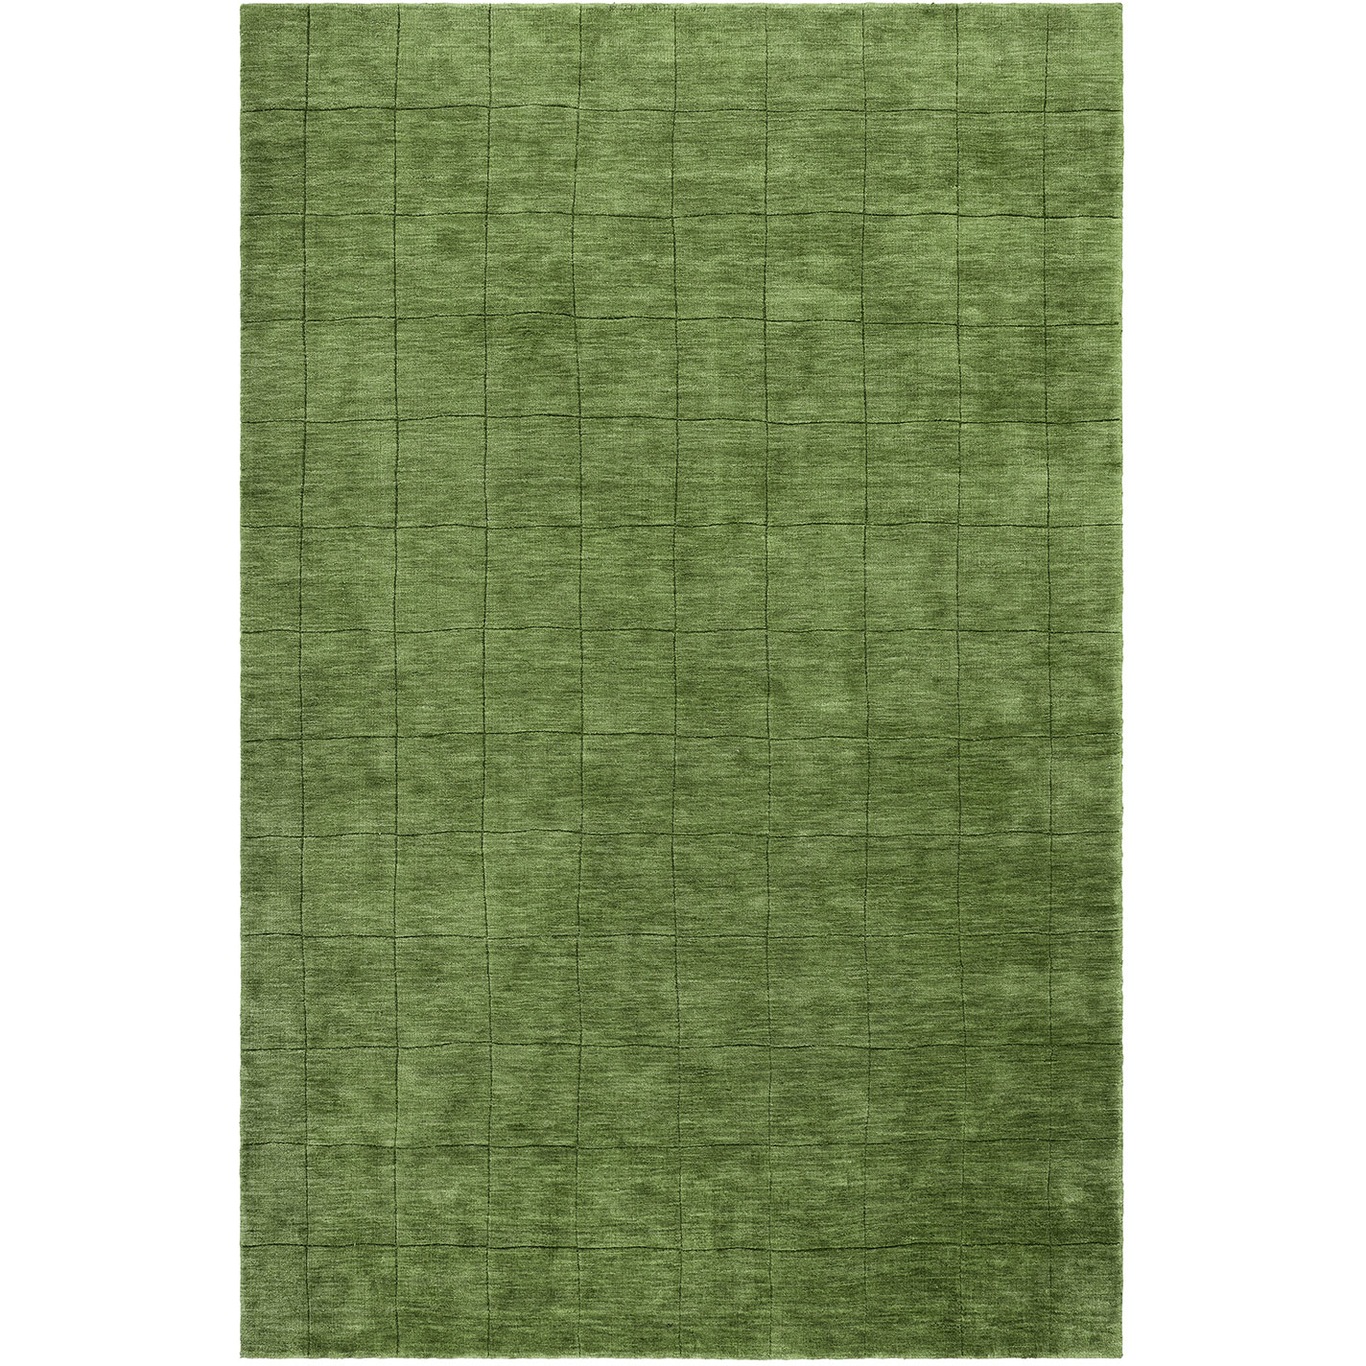 Nari Teppich Cactus Green, 250x350 cm